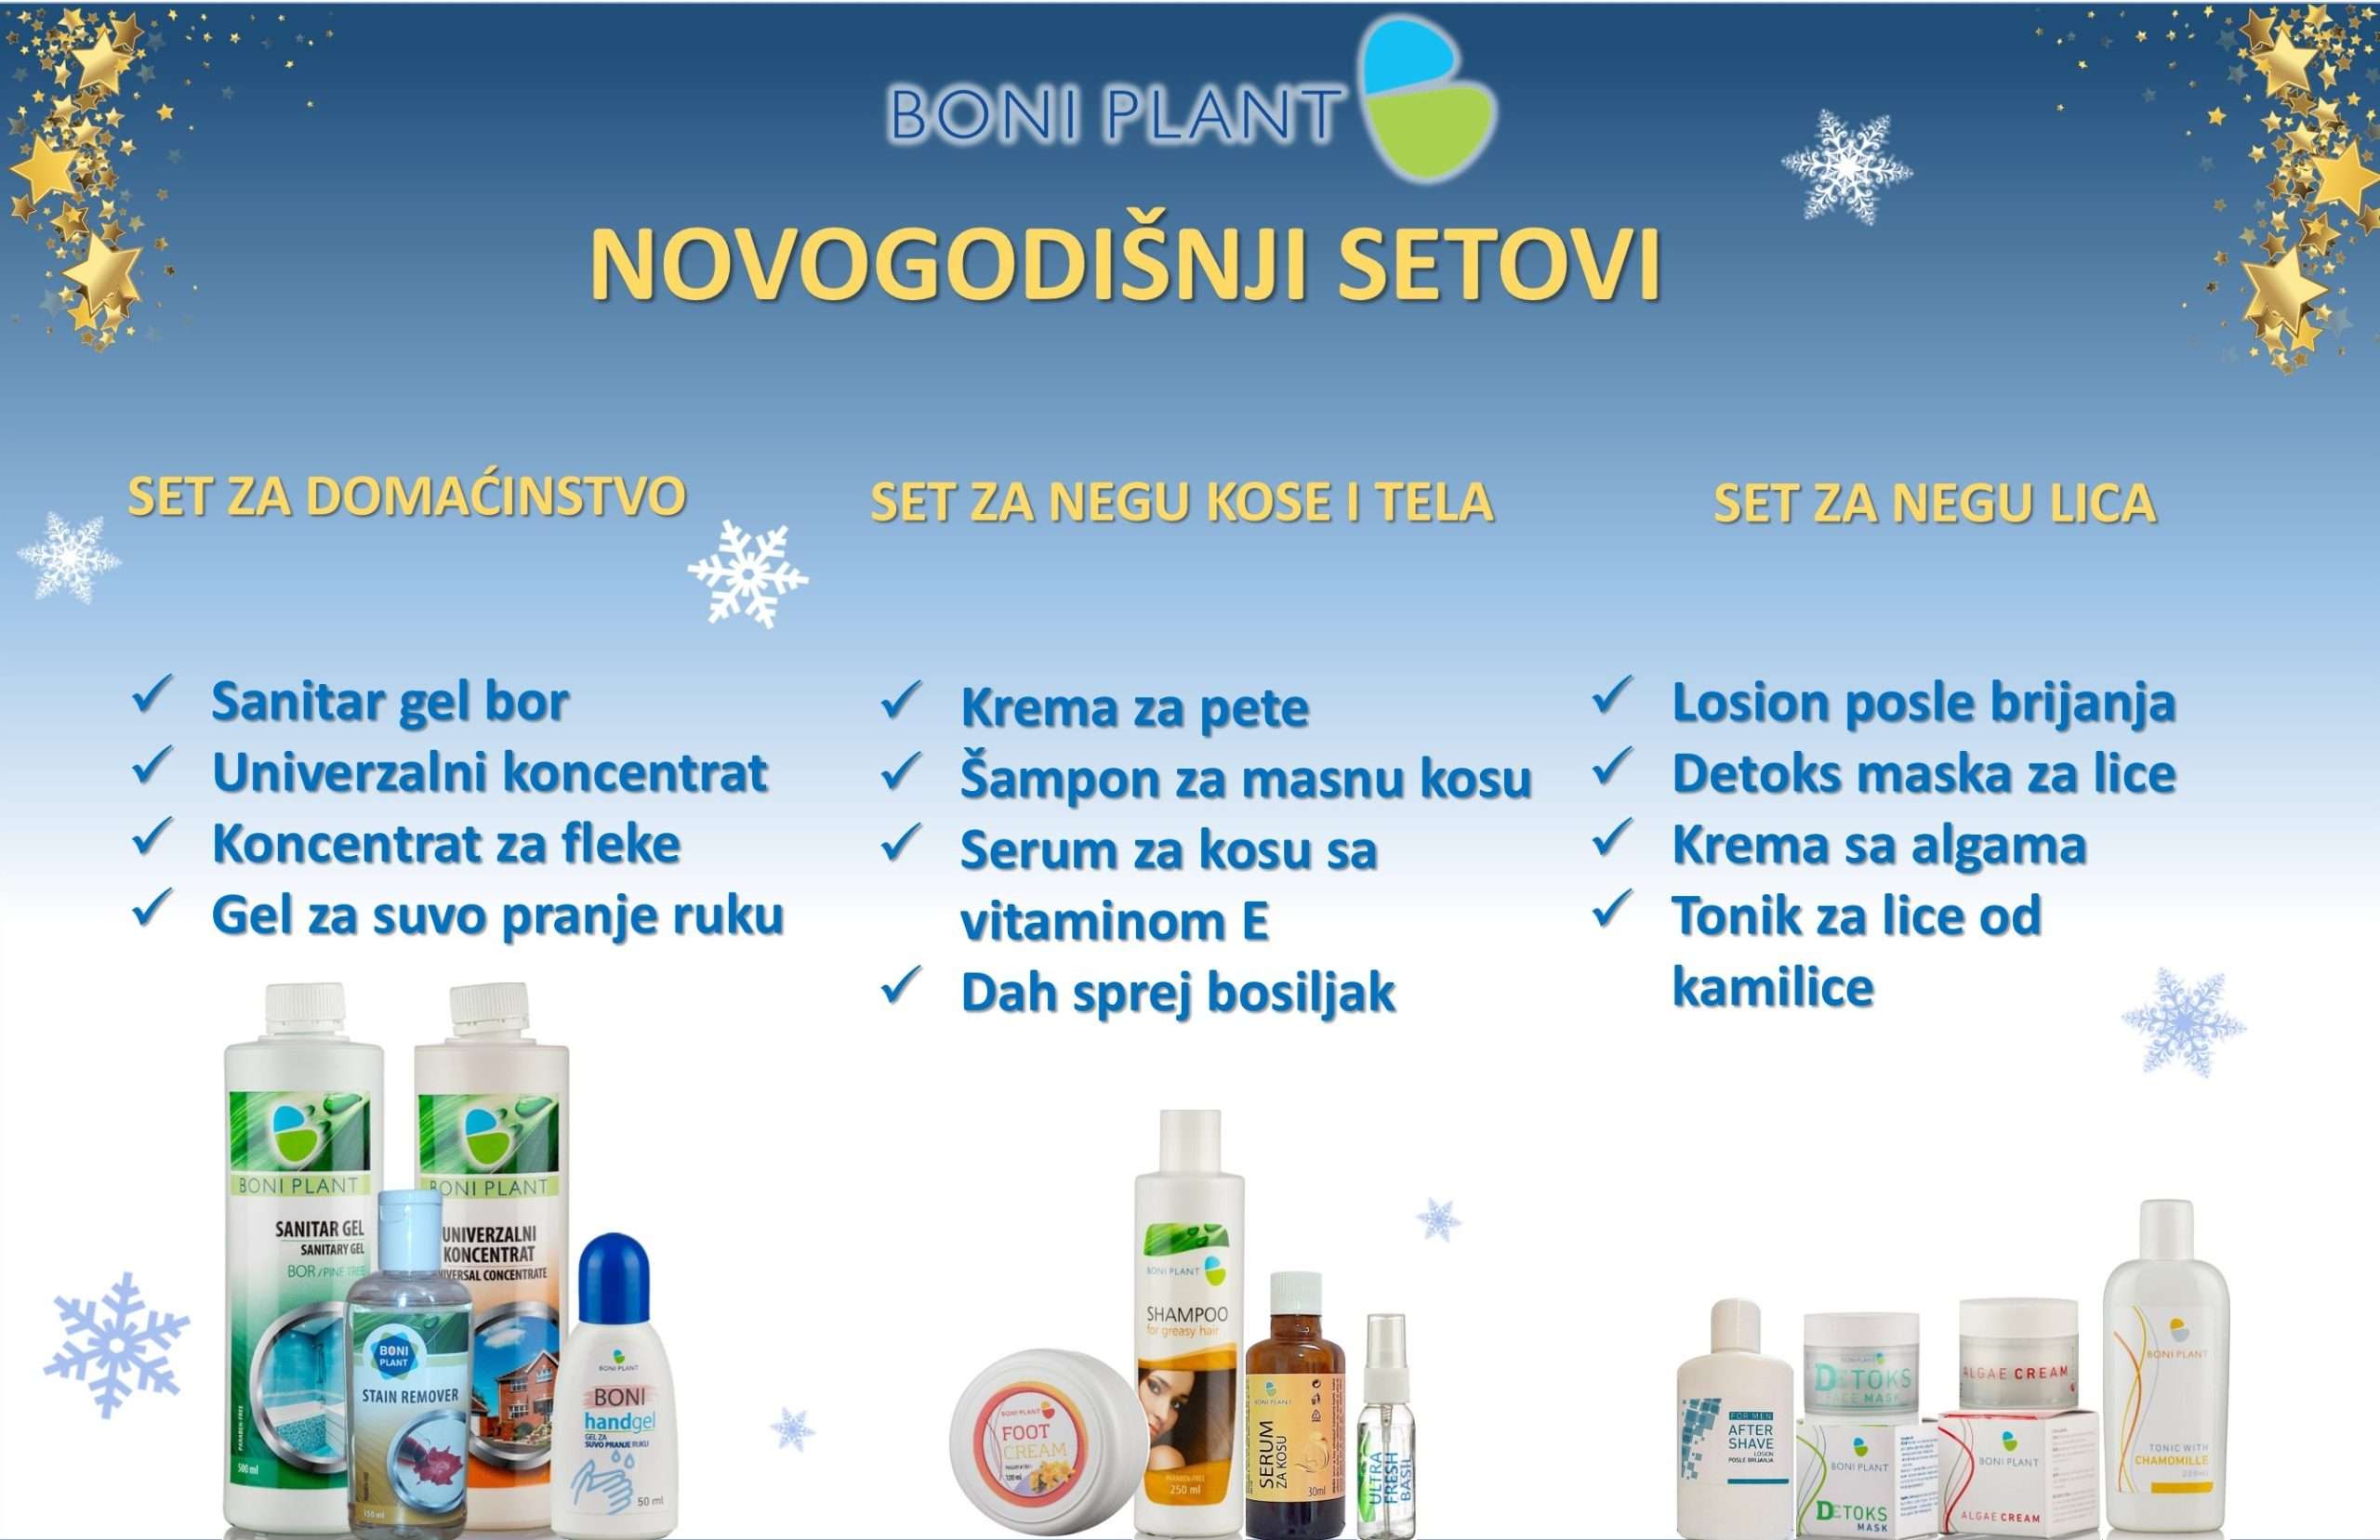 novogodisnja-set-akcija-boniplant-prirodniproizvodi-sajt